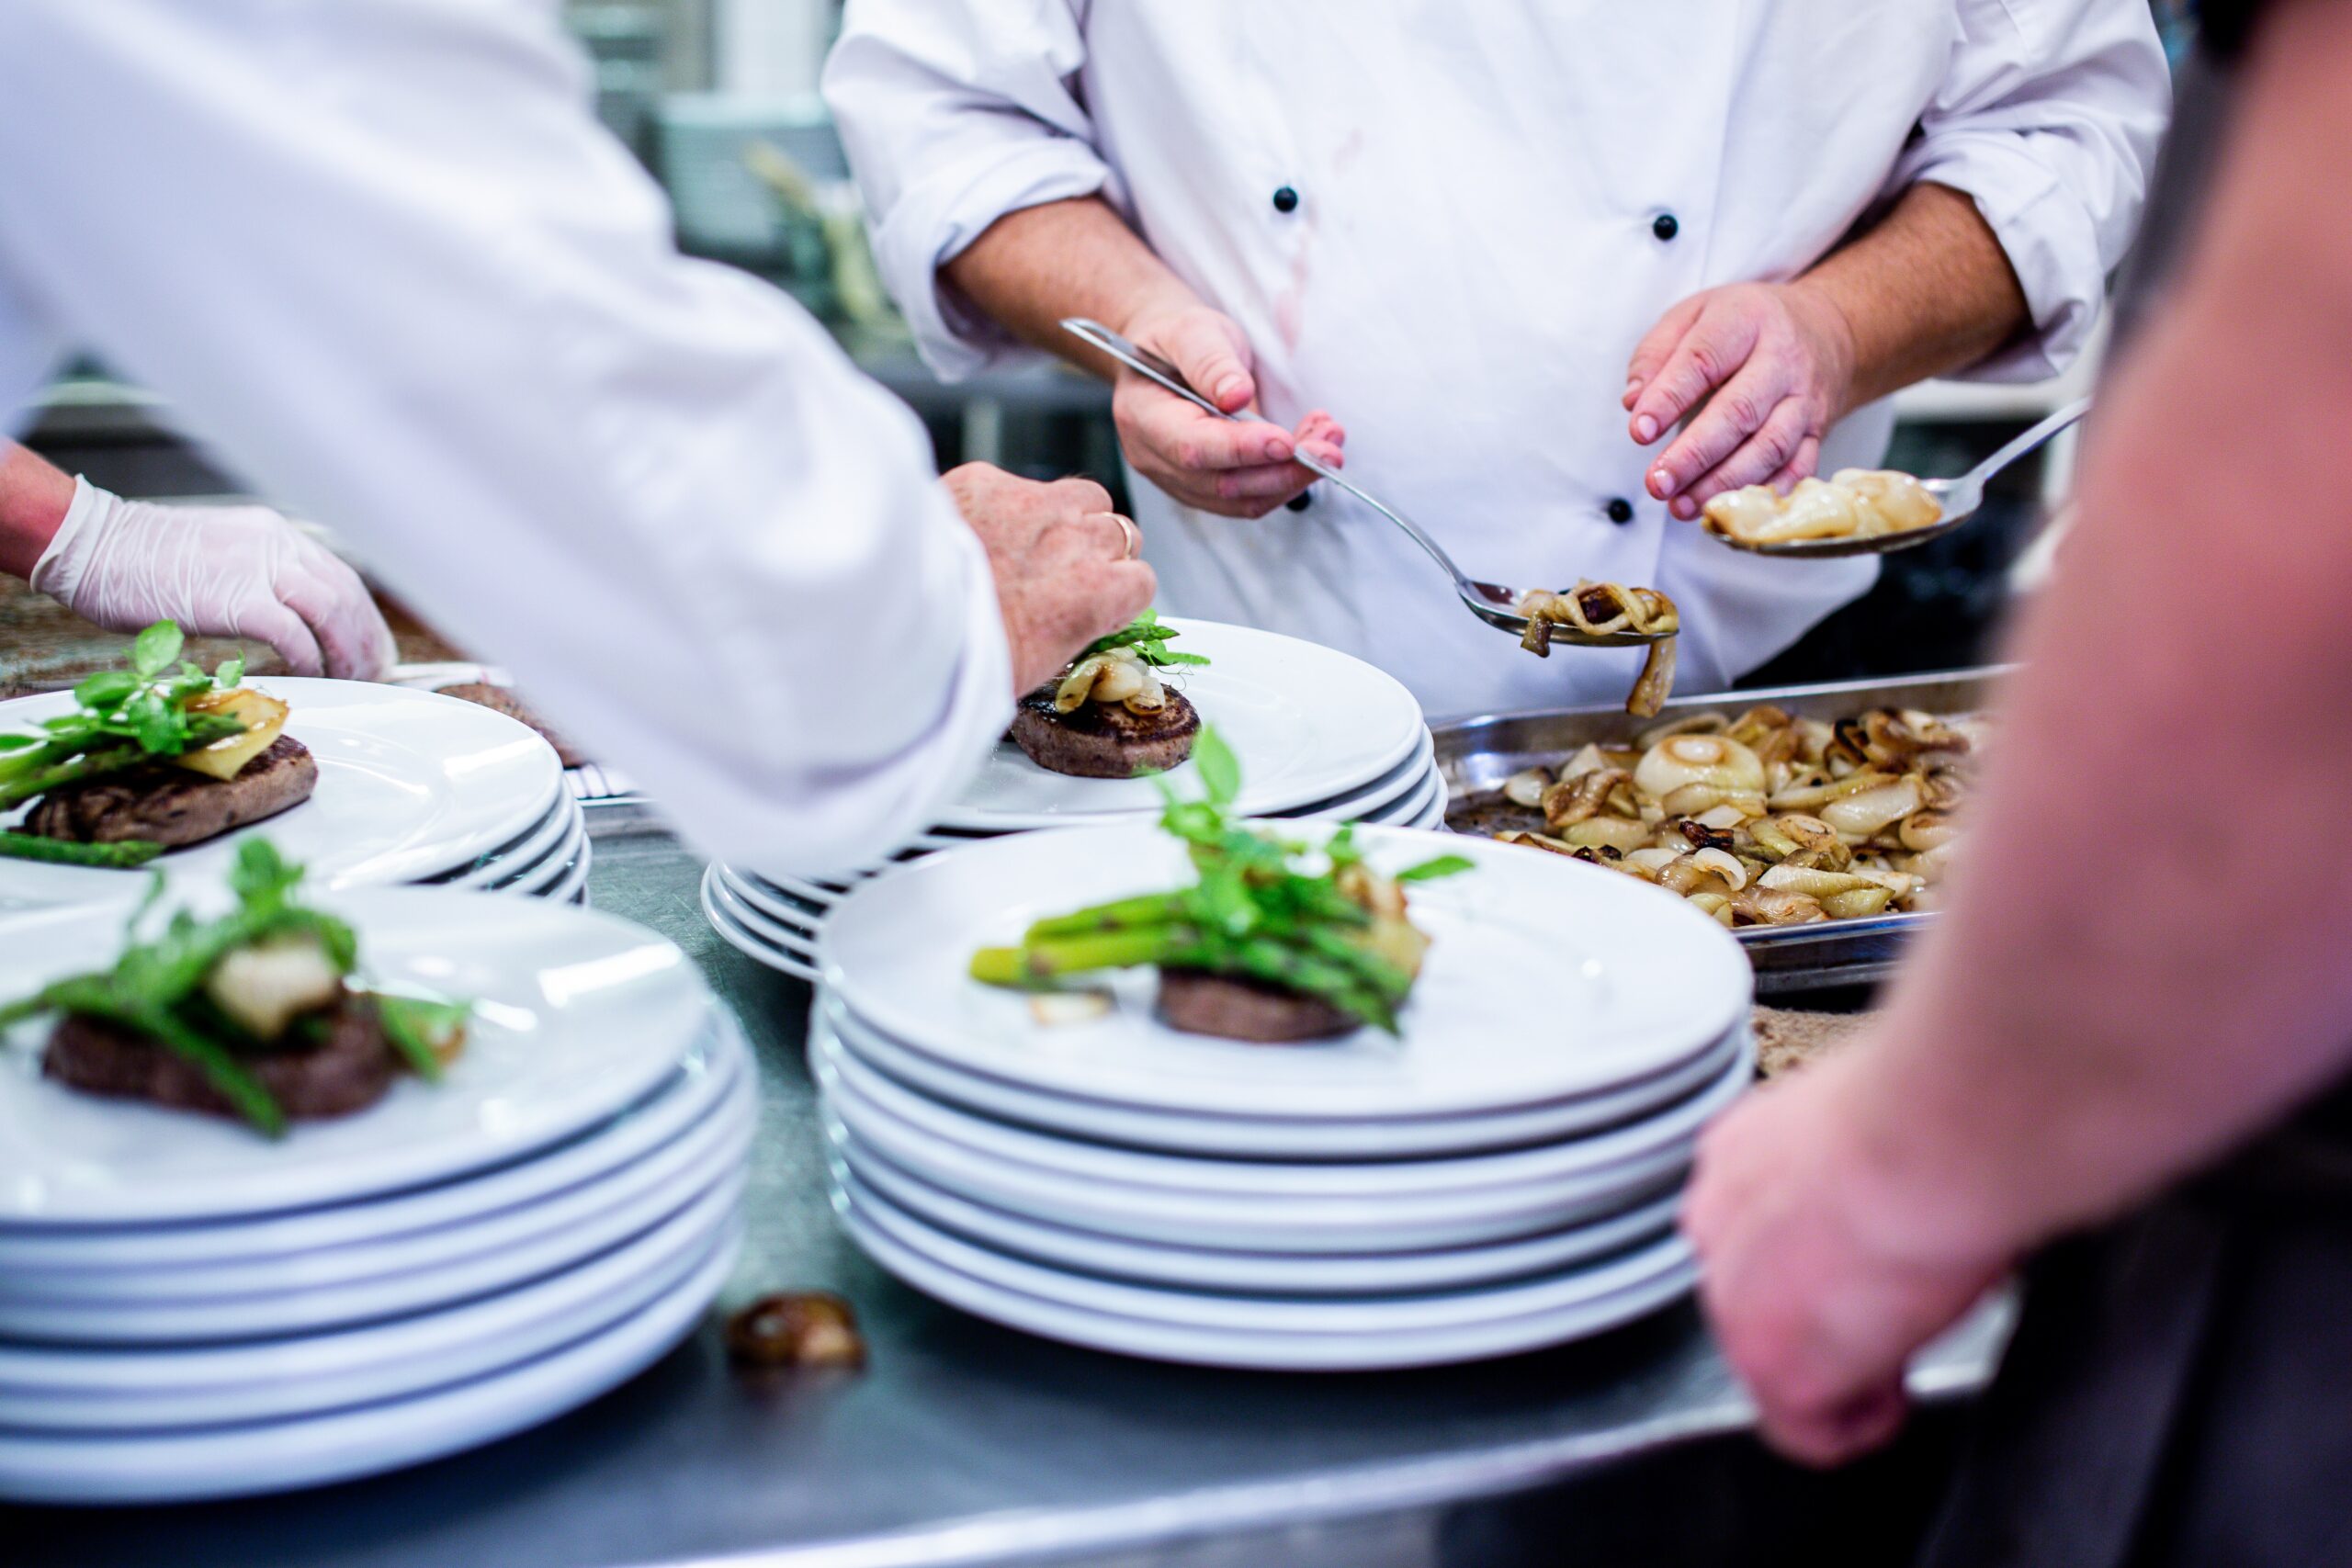 Bilden visar kockar i ett restaurangkök. Frysrum används i restaurangkök tillsammans med frysar för att enklare hantera matvaror på ett säkert sätt.